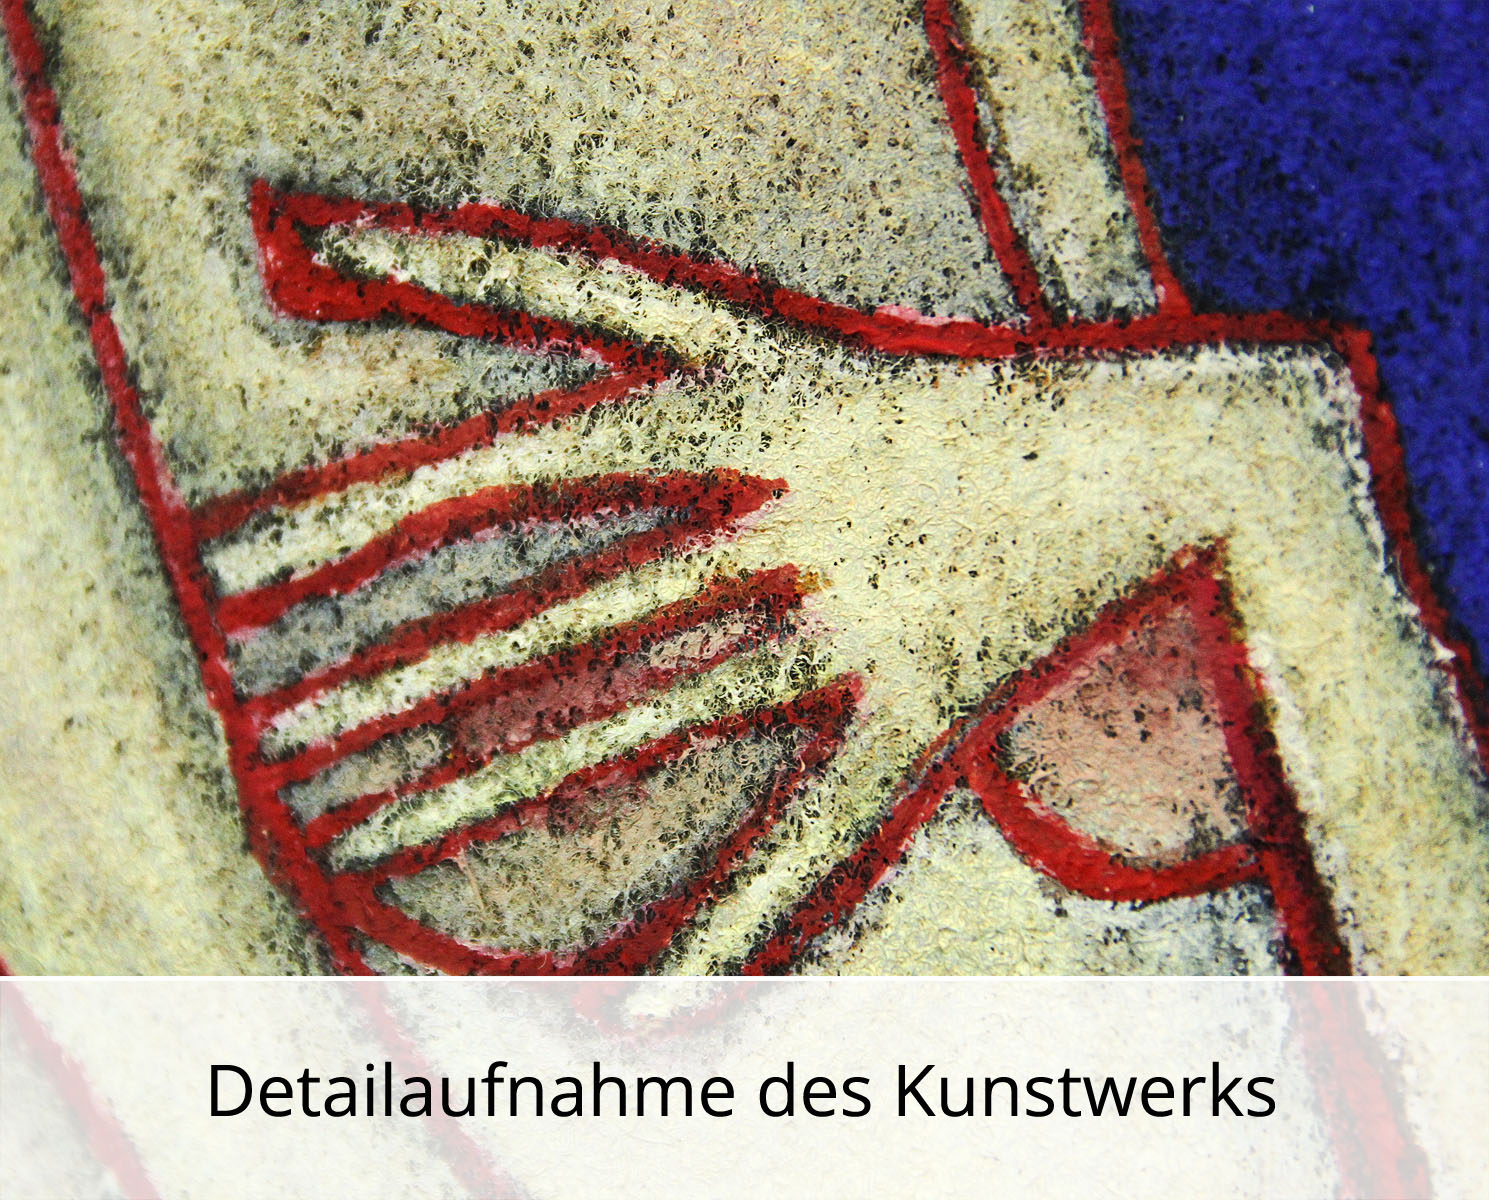 C. Blechschmidt: "Rote Linien", Original/Unikat, zeitgenössisches Ölgemälde